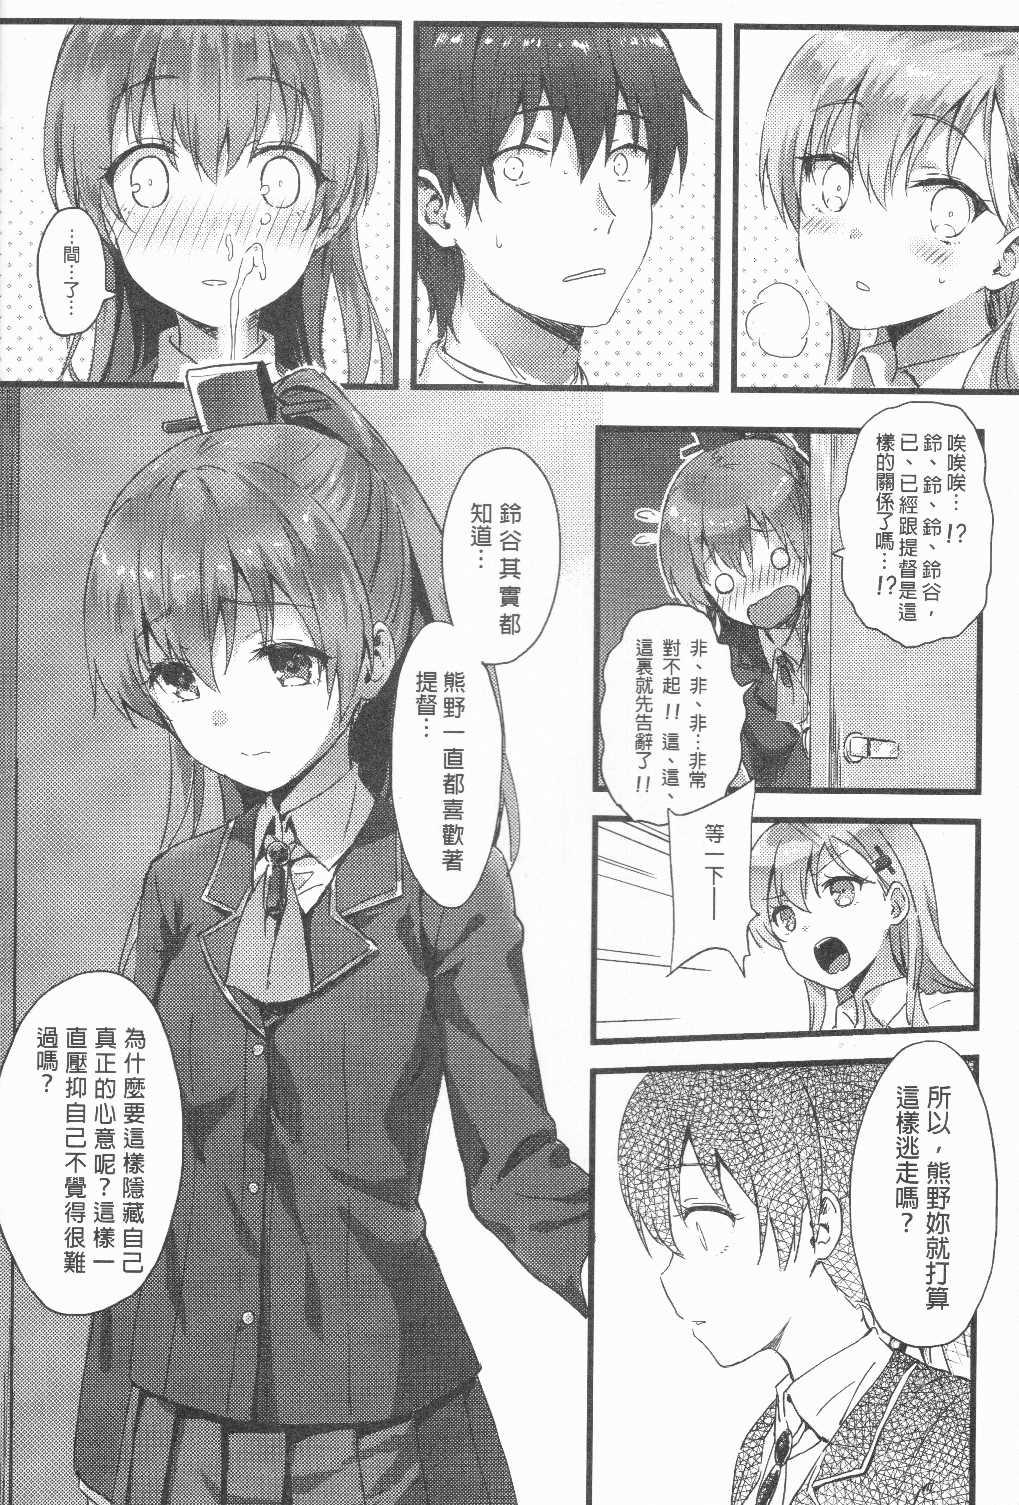 Rubbing Suzukuma no Seibi Kiroku - Note For Suzukuma's Upgrading - Kantai collection Whore - Page 5